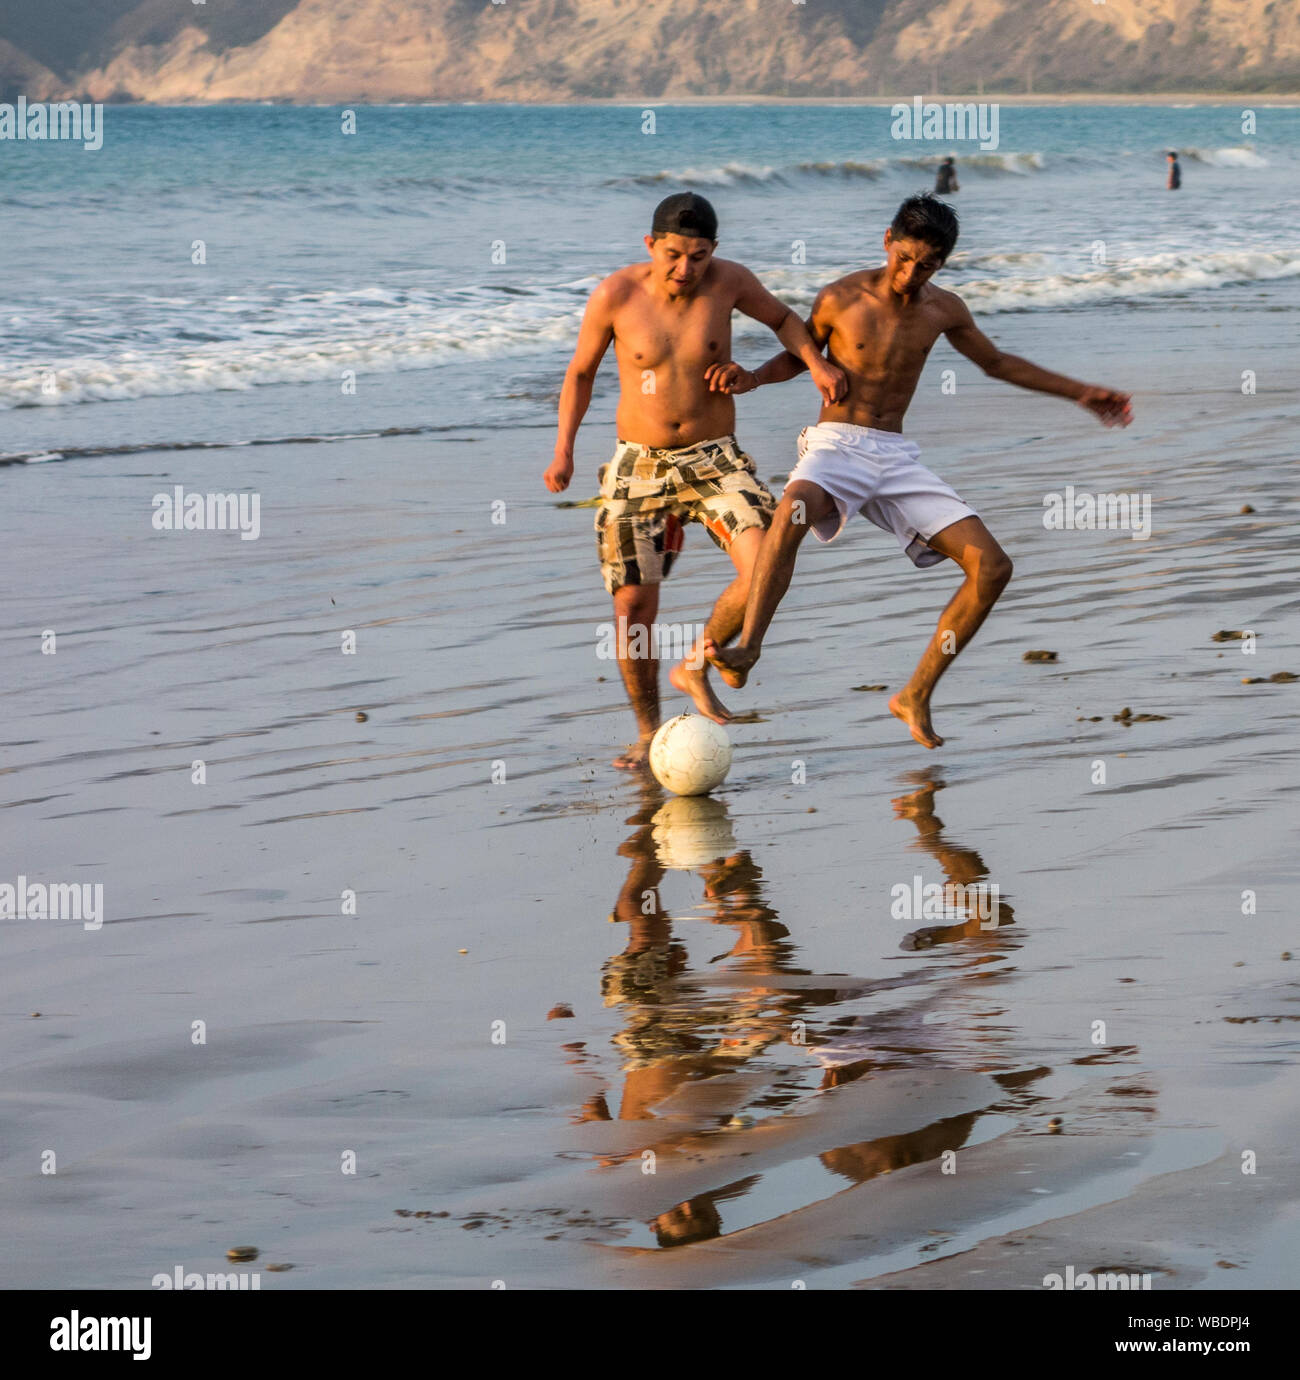 Puerto Lopez, Ecuador - Nov 24, 2012: Two boys play futbol - soccer - on the beach Stock Photo